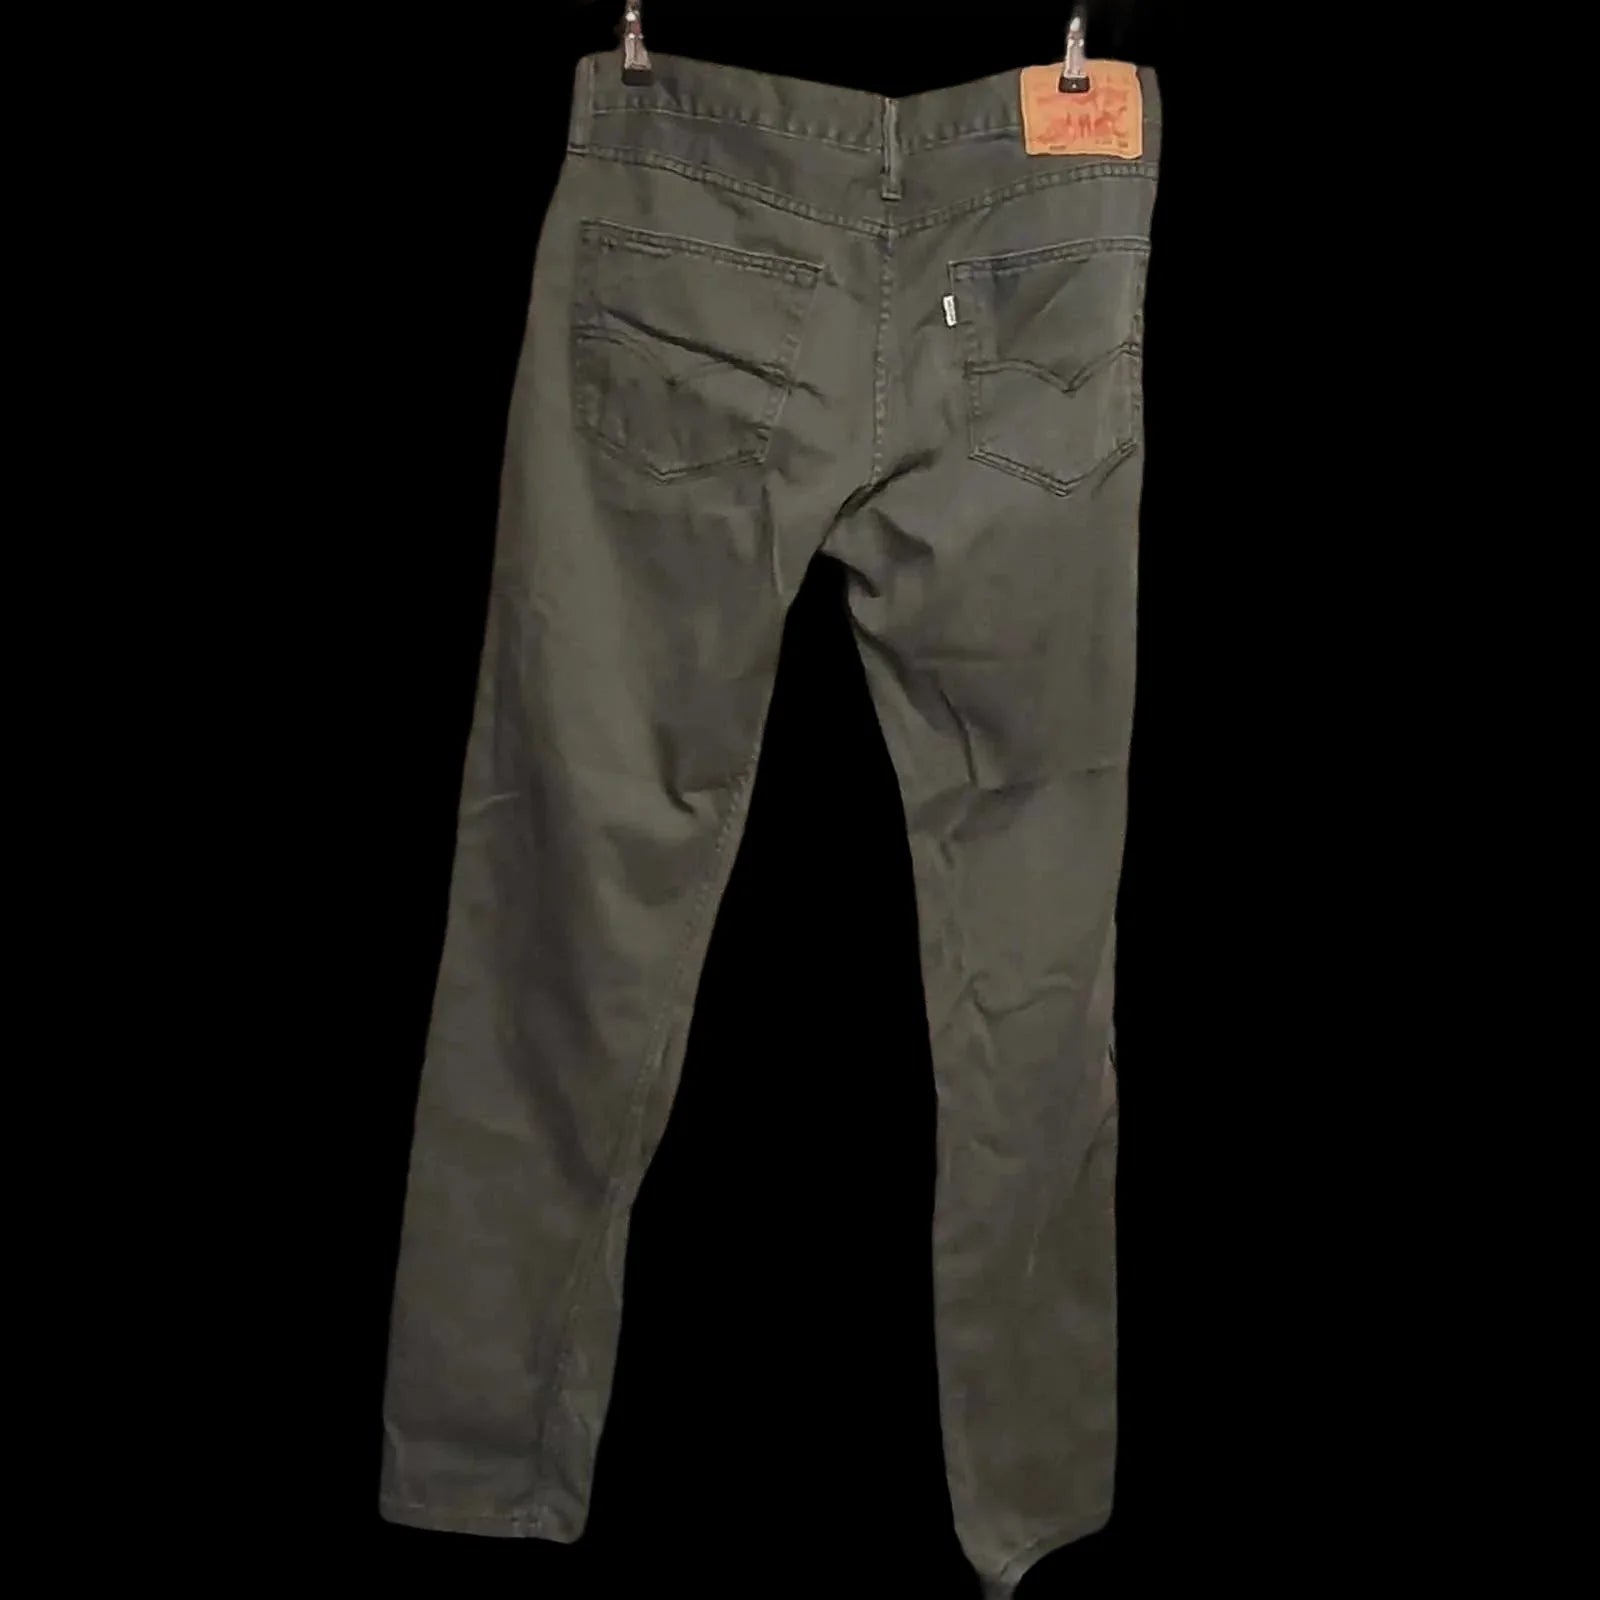 Mens Levis 508 Grey Jeans W32 L34 - Levi’s - 2 - 510